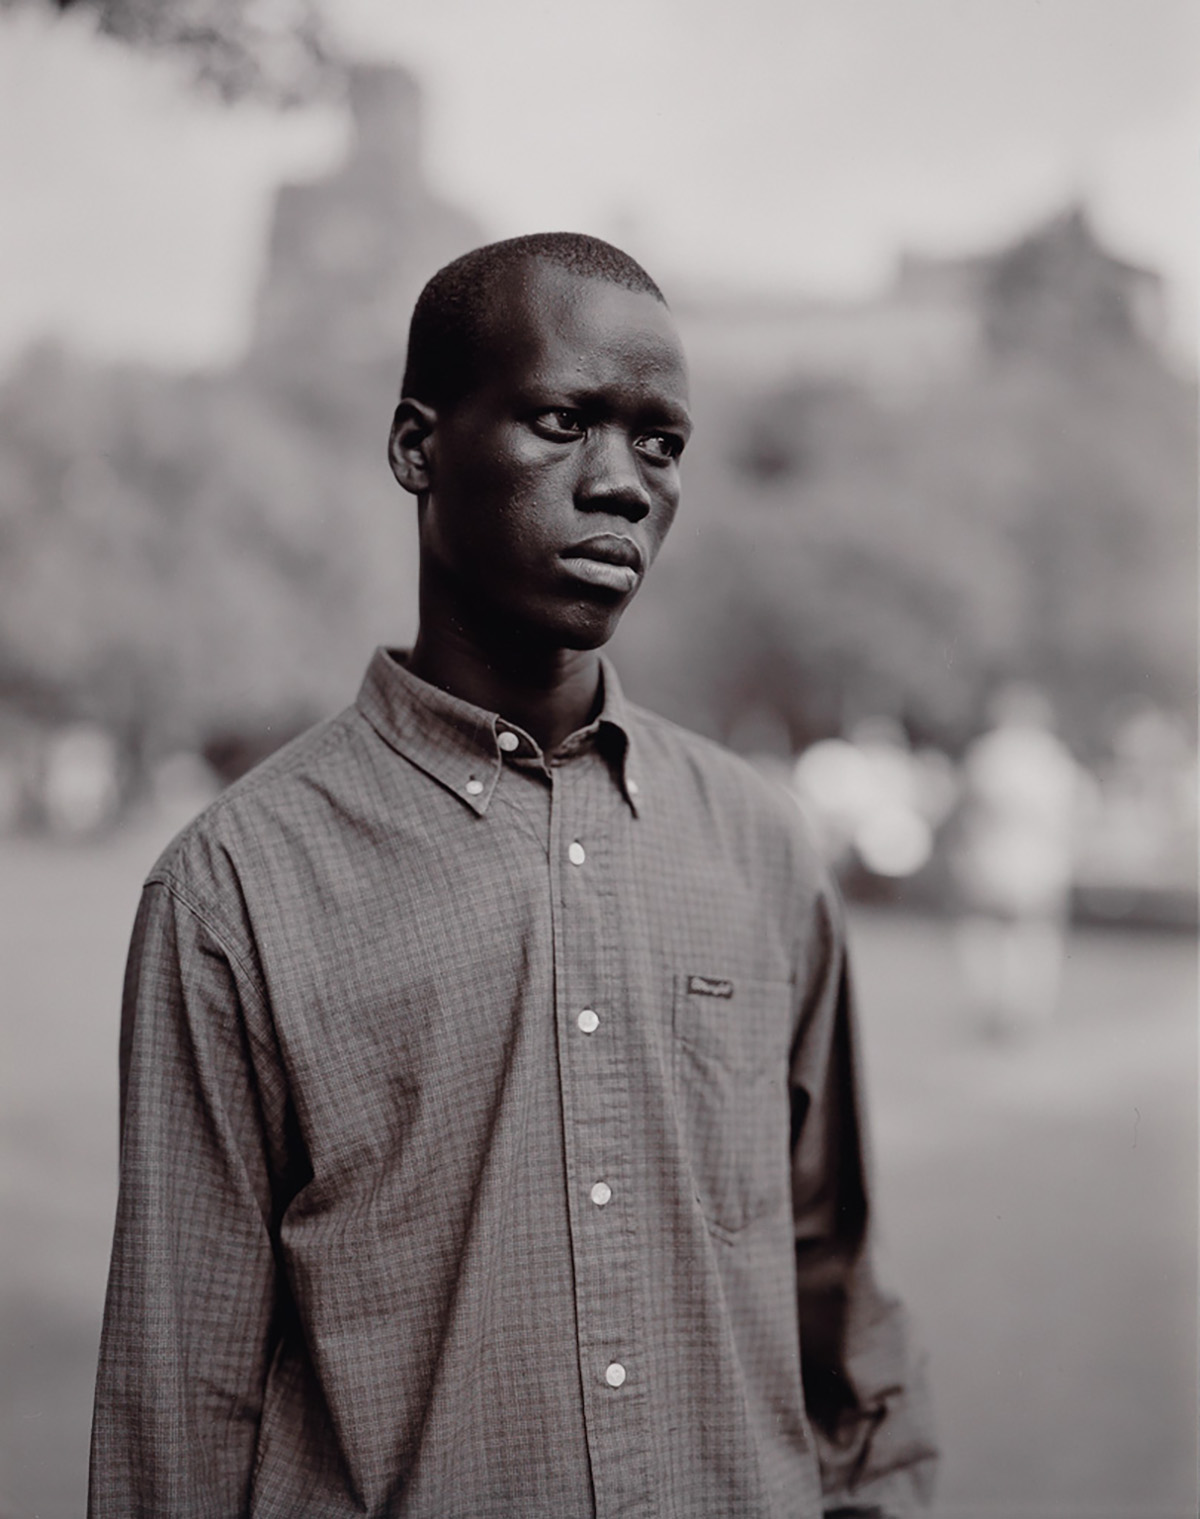 JUDITH JOY ROSS (1946- ) Edward, Ojiok Edward, 17 Years Old, Sudanese Refugee, Washington Square Park, September 20.